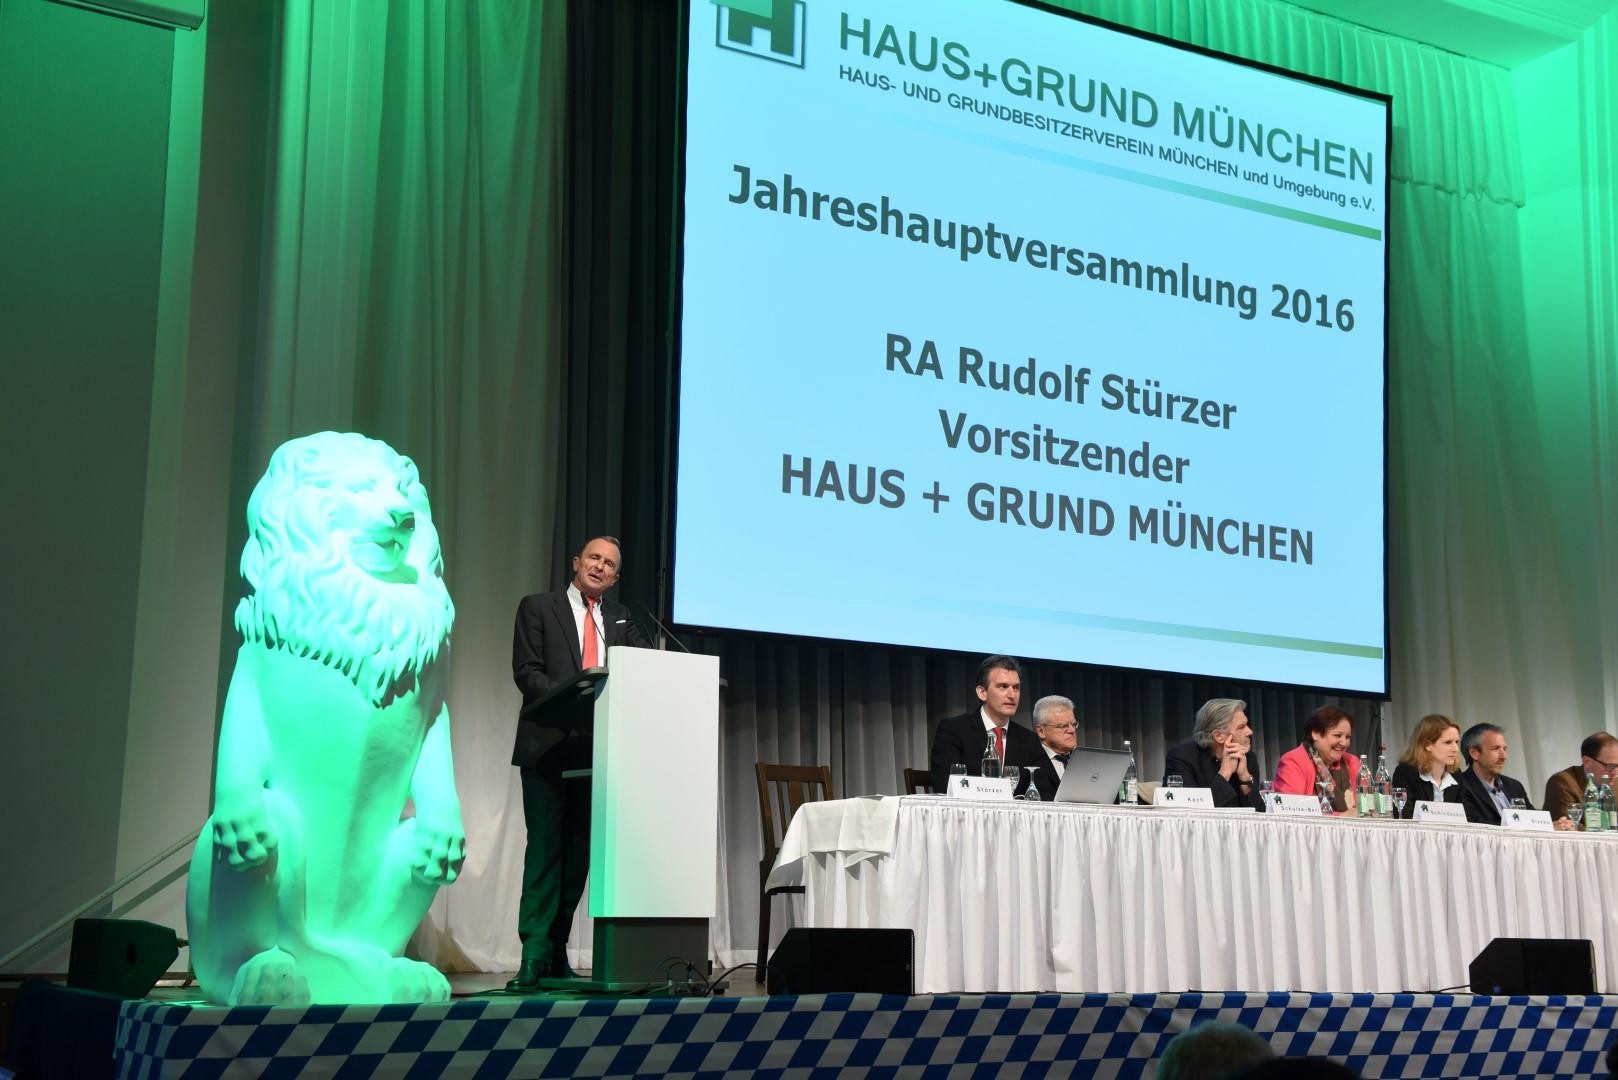 Haus Und Grund München
 Jahreshauptversammlung 2016 Haus und Grund München